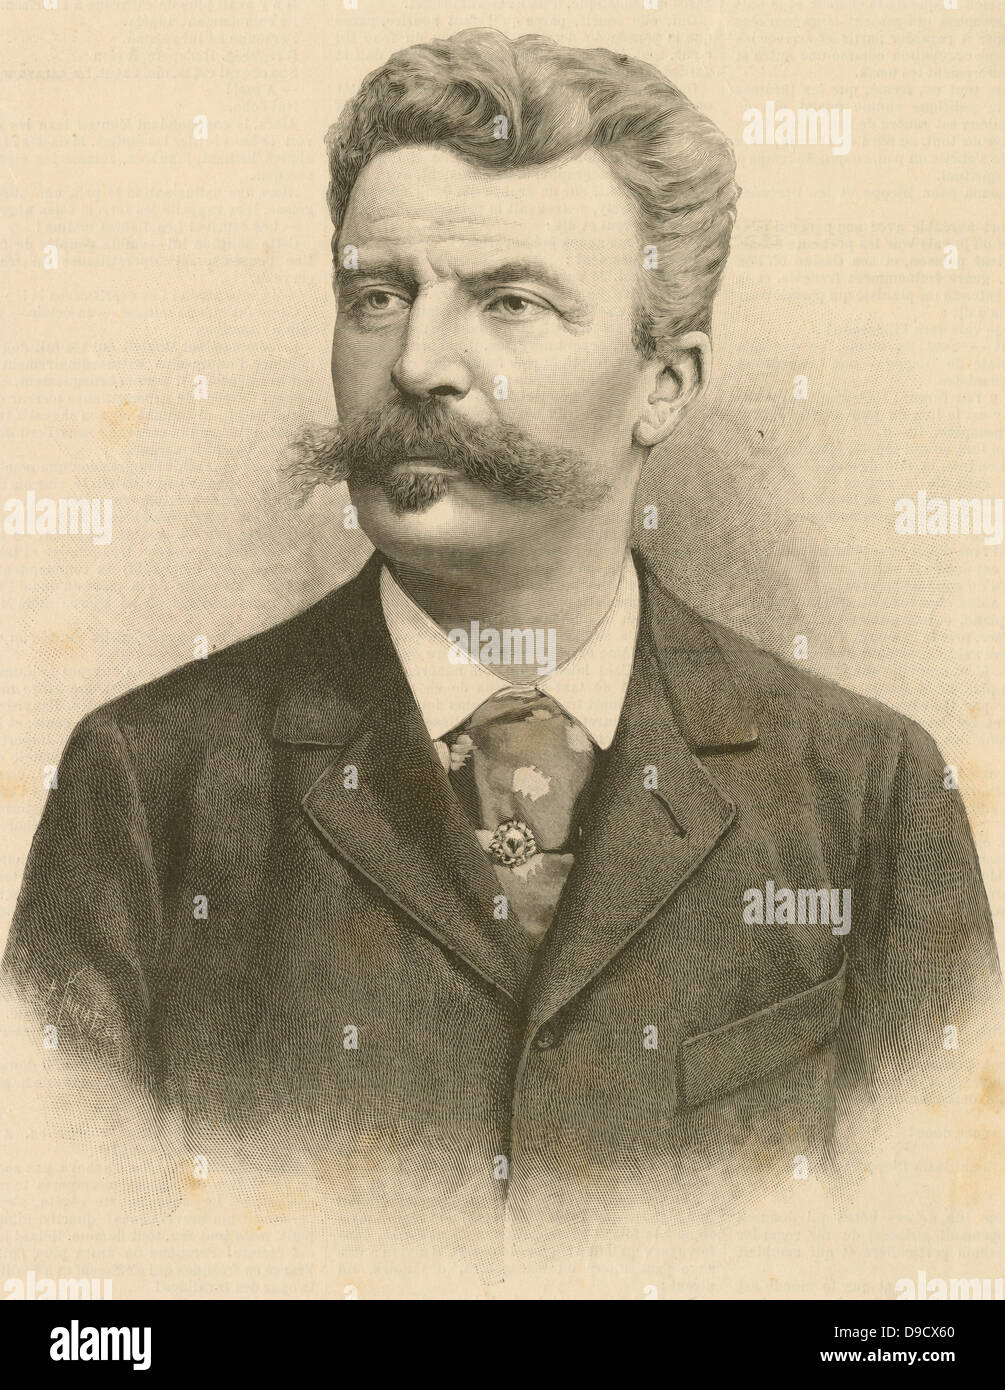 (Henri Rene Albert) Guy de Maupassant (1850-1893) französischer Schriftsteller und Schriftsteller und einer der größten Exponenten der Kurzgeschichte. Gravur zum Zeitpunkt der Maupassants Tod veröffentlicht. Stockfoto